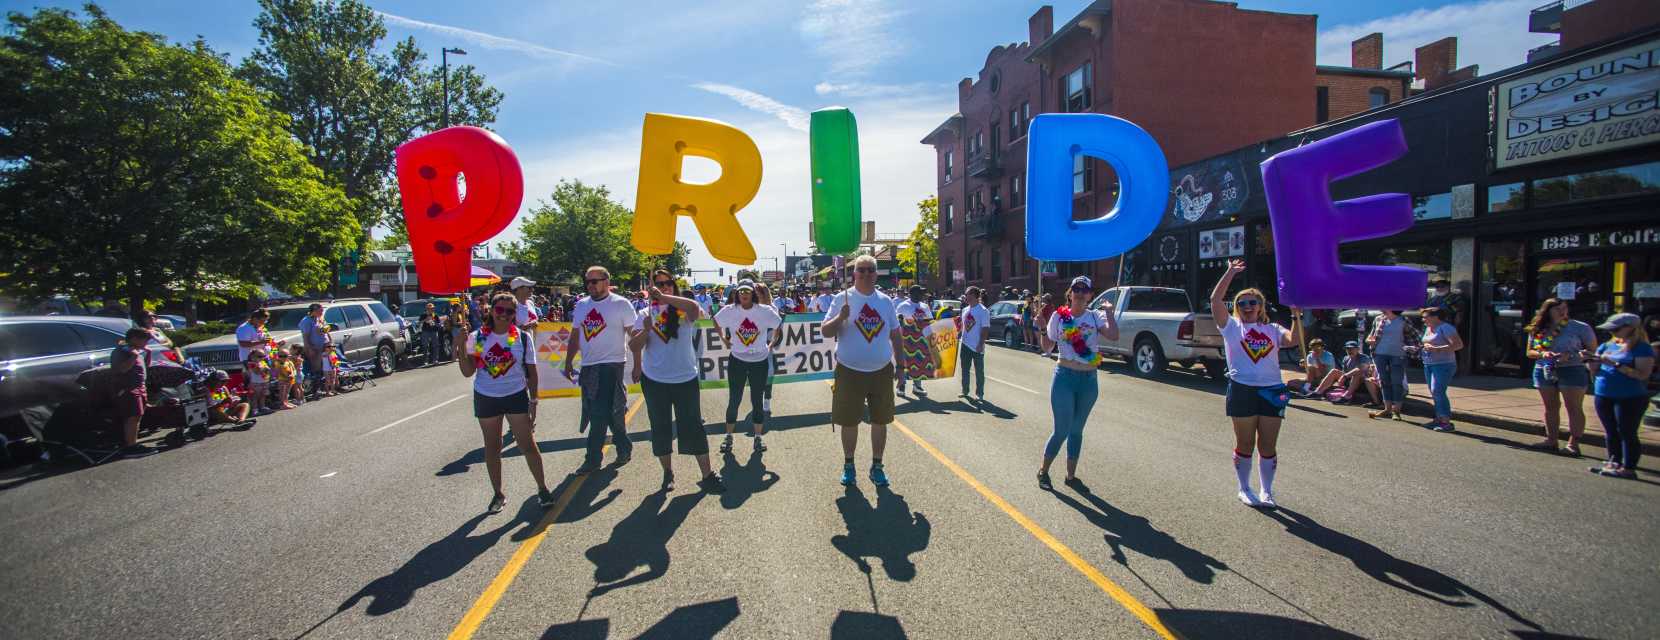 Denver PrideFest parade